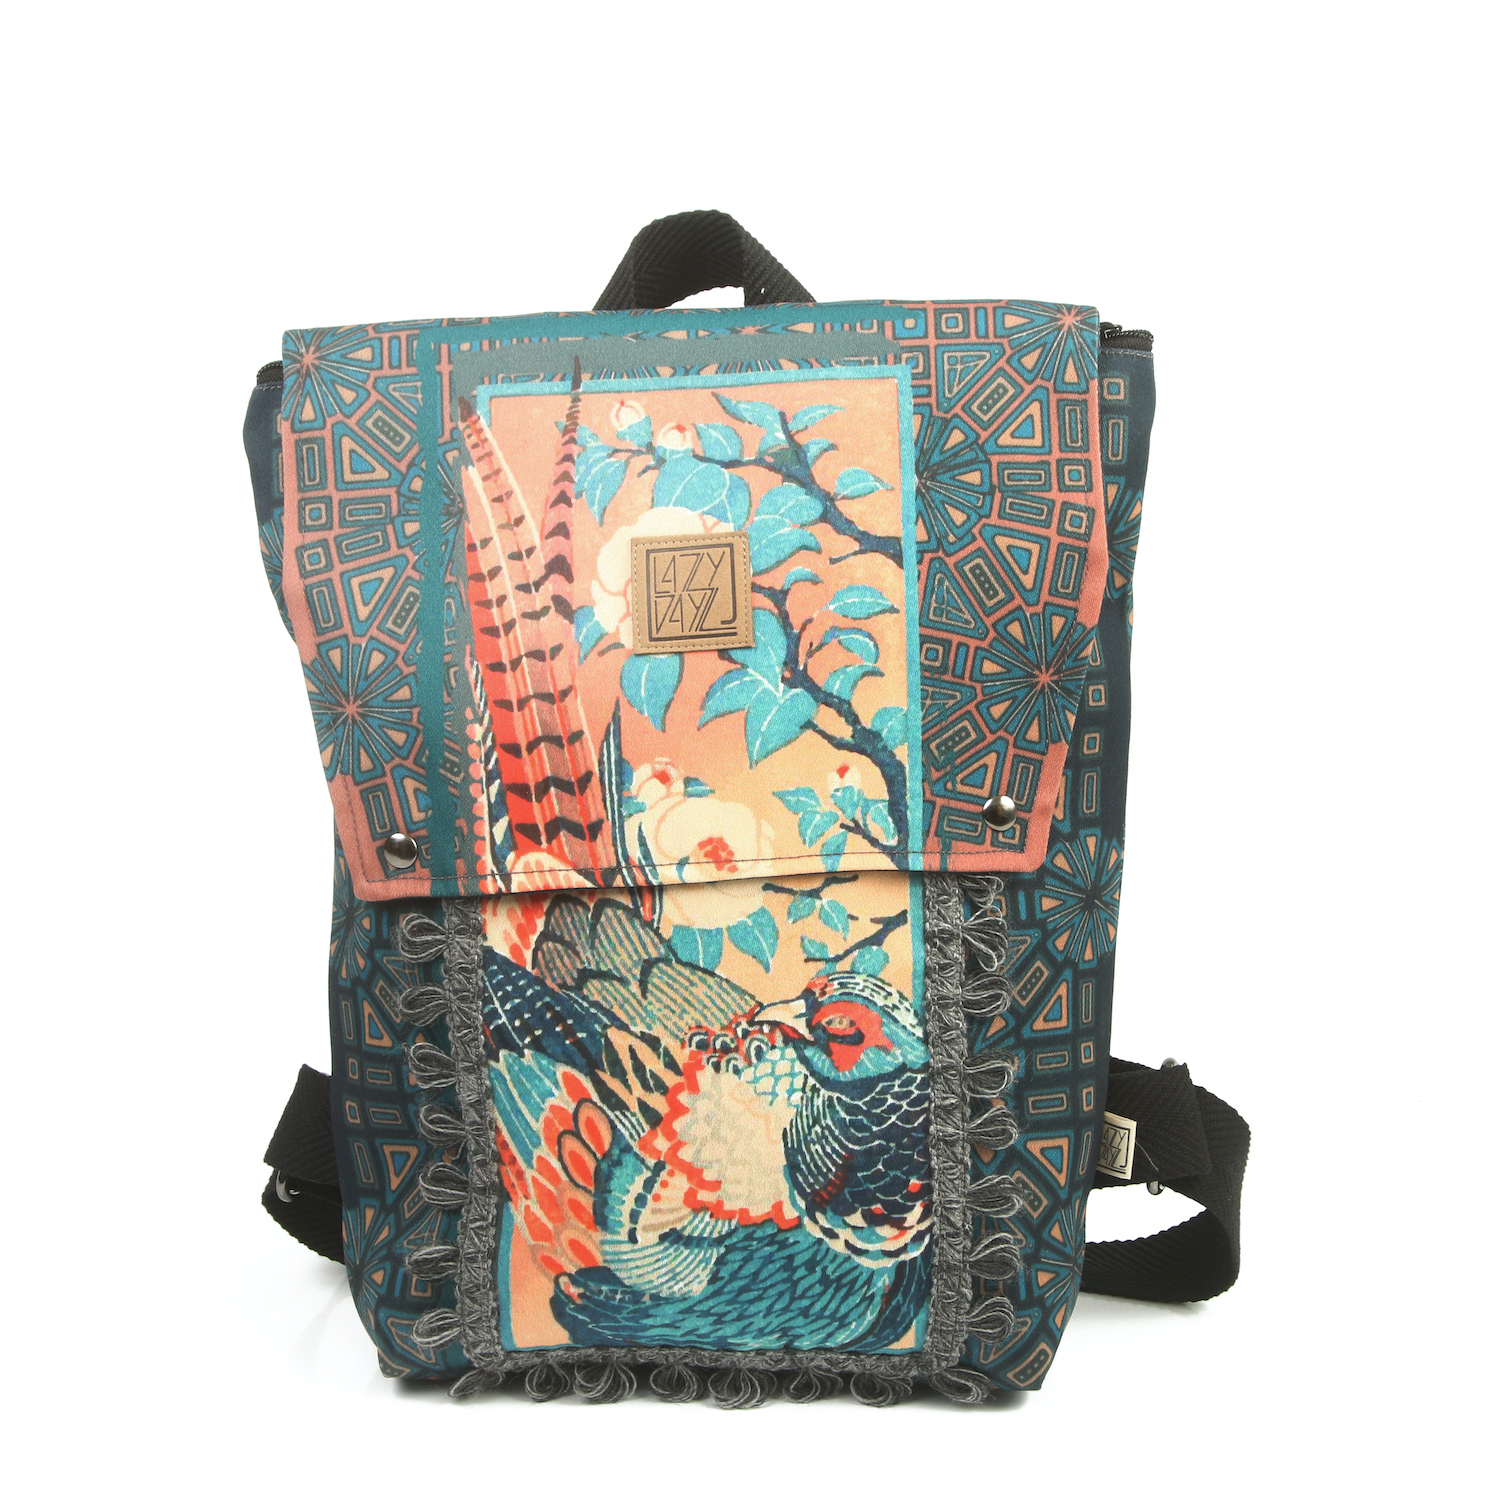 LazyDayz-Designs-Backpack-γυναικείος-σάκος-πλάτης-χειροποίητος-bb0704c